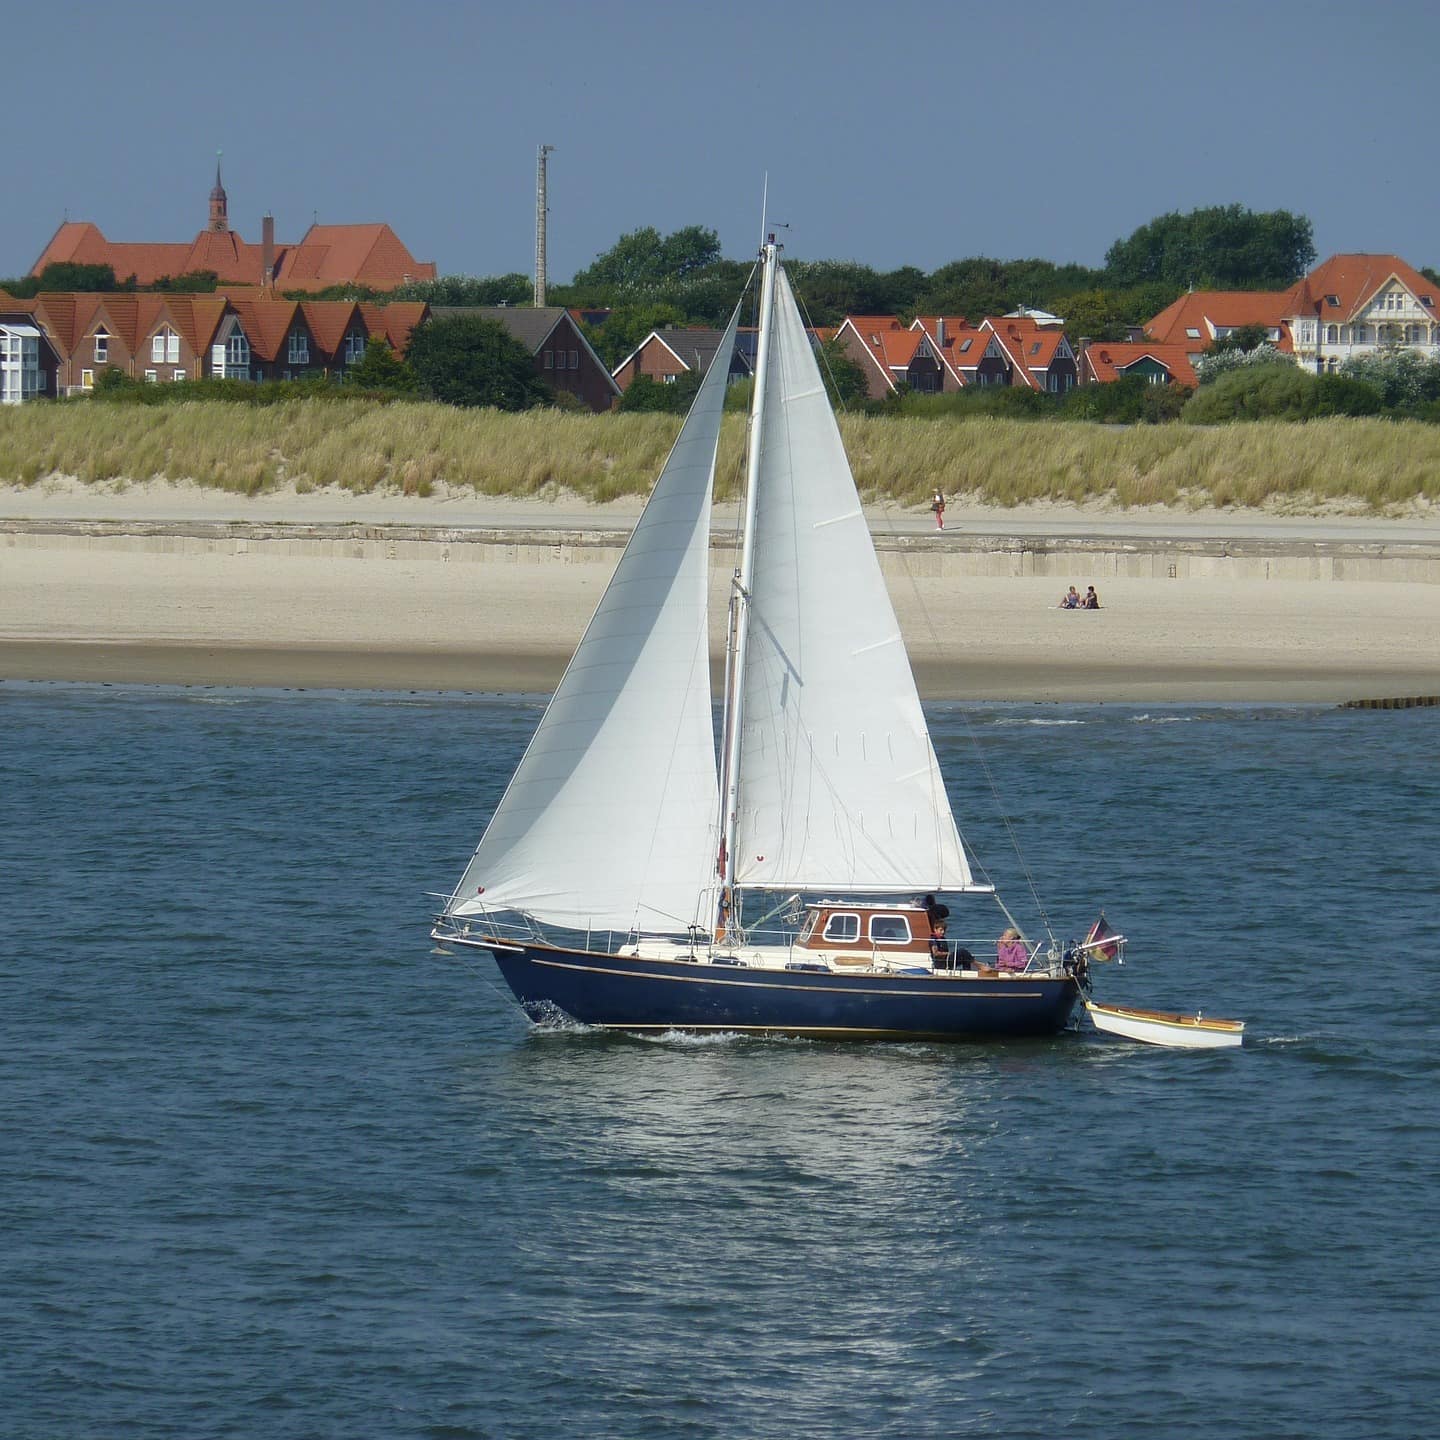 Ein Segelboot im Wasser, im Hintergrund sind Häuser von Norderney zu sehen